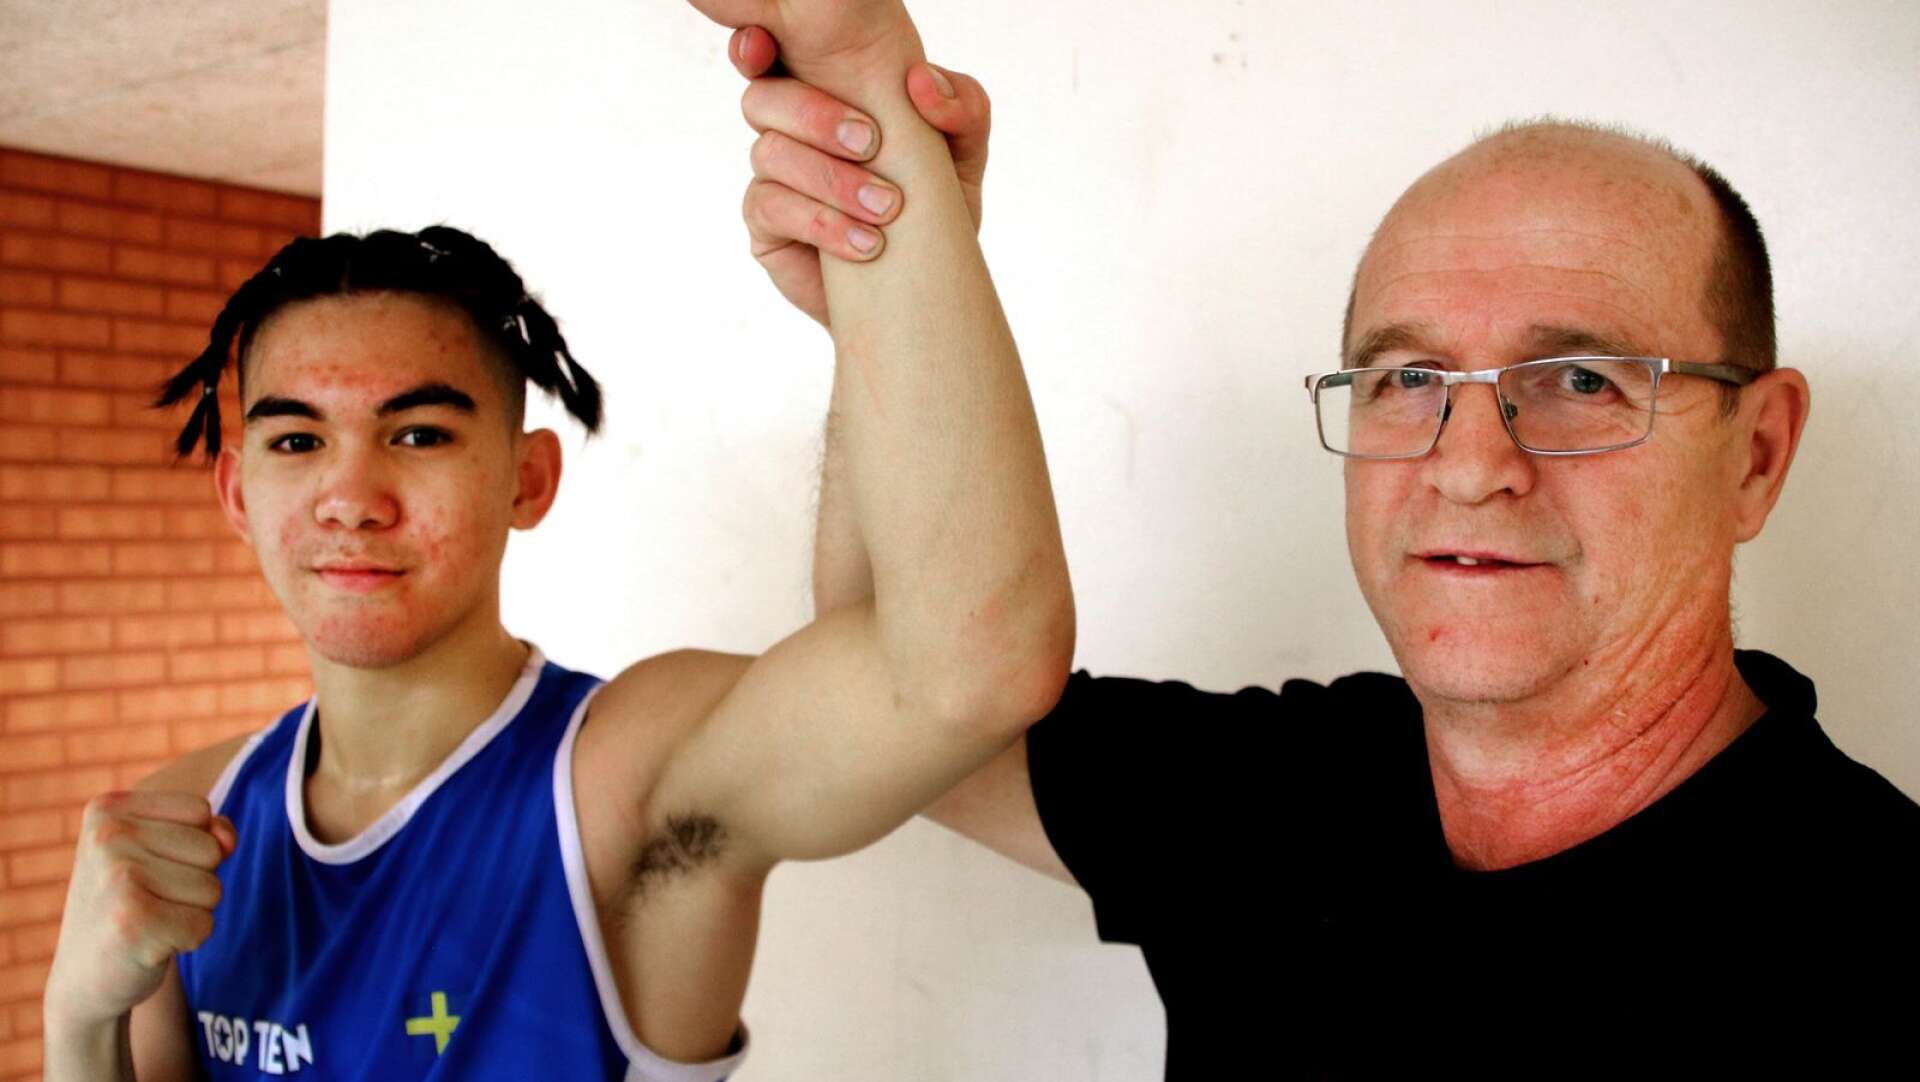 16-årige &quot;Alexis&quot; Fredriksson är Sveriges störste boxningstalang och spås en lysande framtid i ringen. Tidigare i år blev han trea på ungdoms-EM. Hans pappa och tränare, Kermith Fredriksson, kommer från Säffle och var själv svensk mästare flera gånger om. 